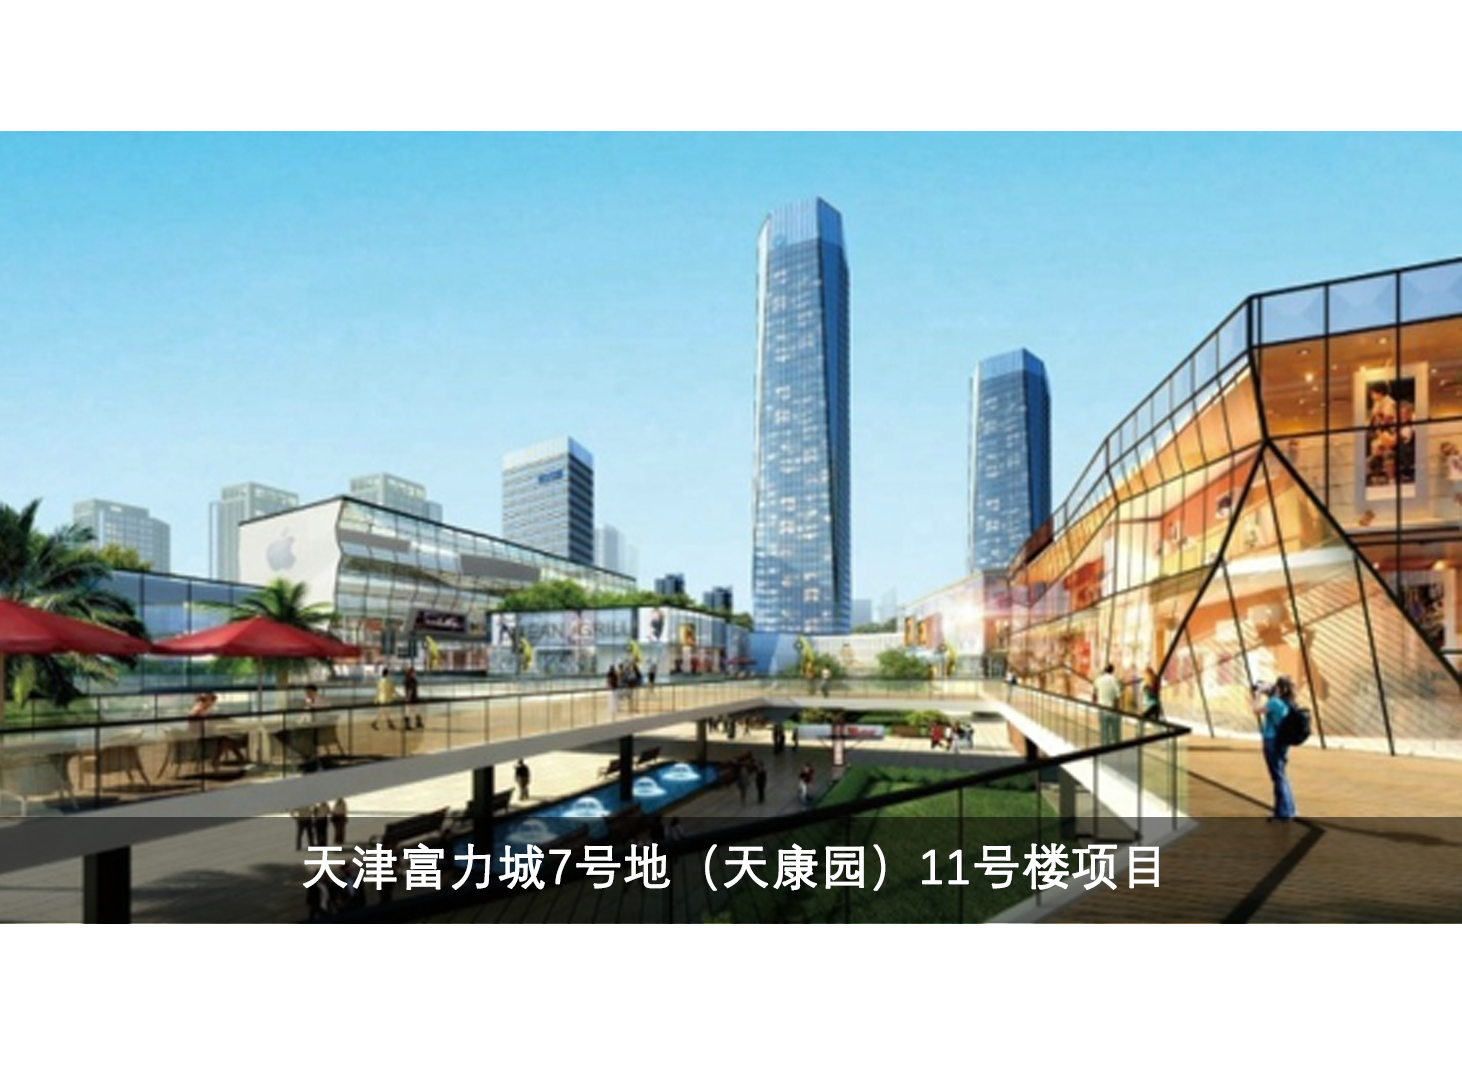 6.工程案例-天津富力城7号地-天康园11号楼项目